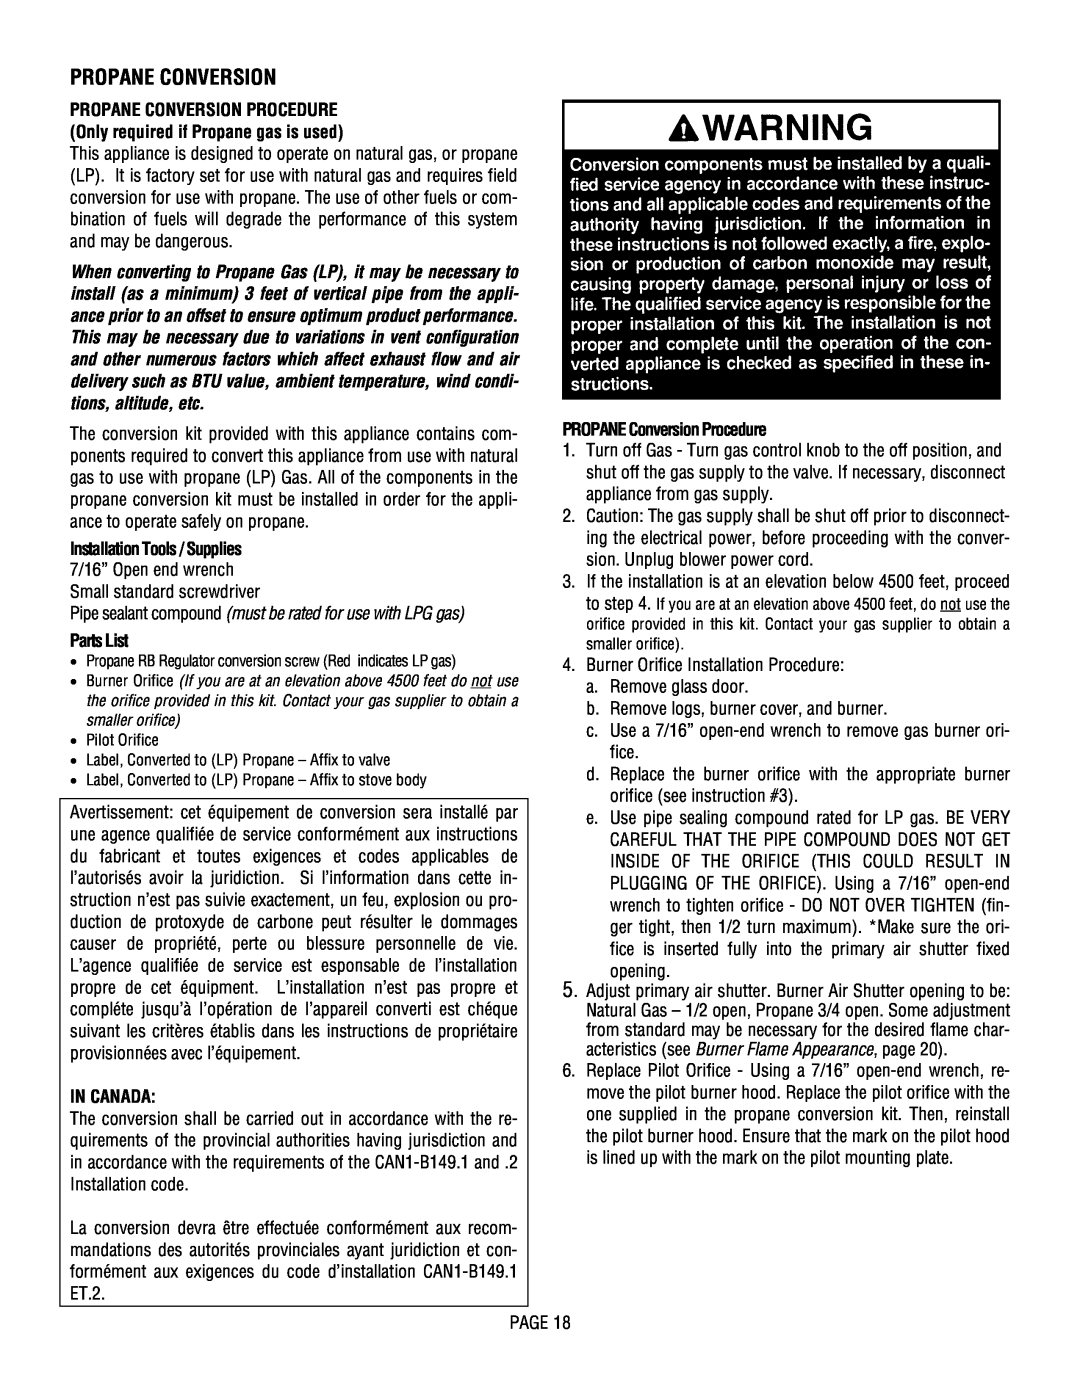 Lennox Hearth L30 DVF-2 operation manual Propane Conversion, Parts List, In Canada, PROPANE Conversion Procedure 